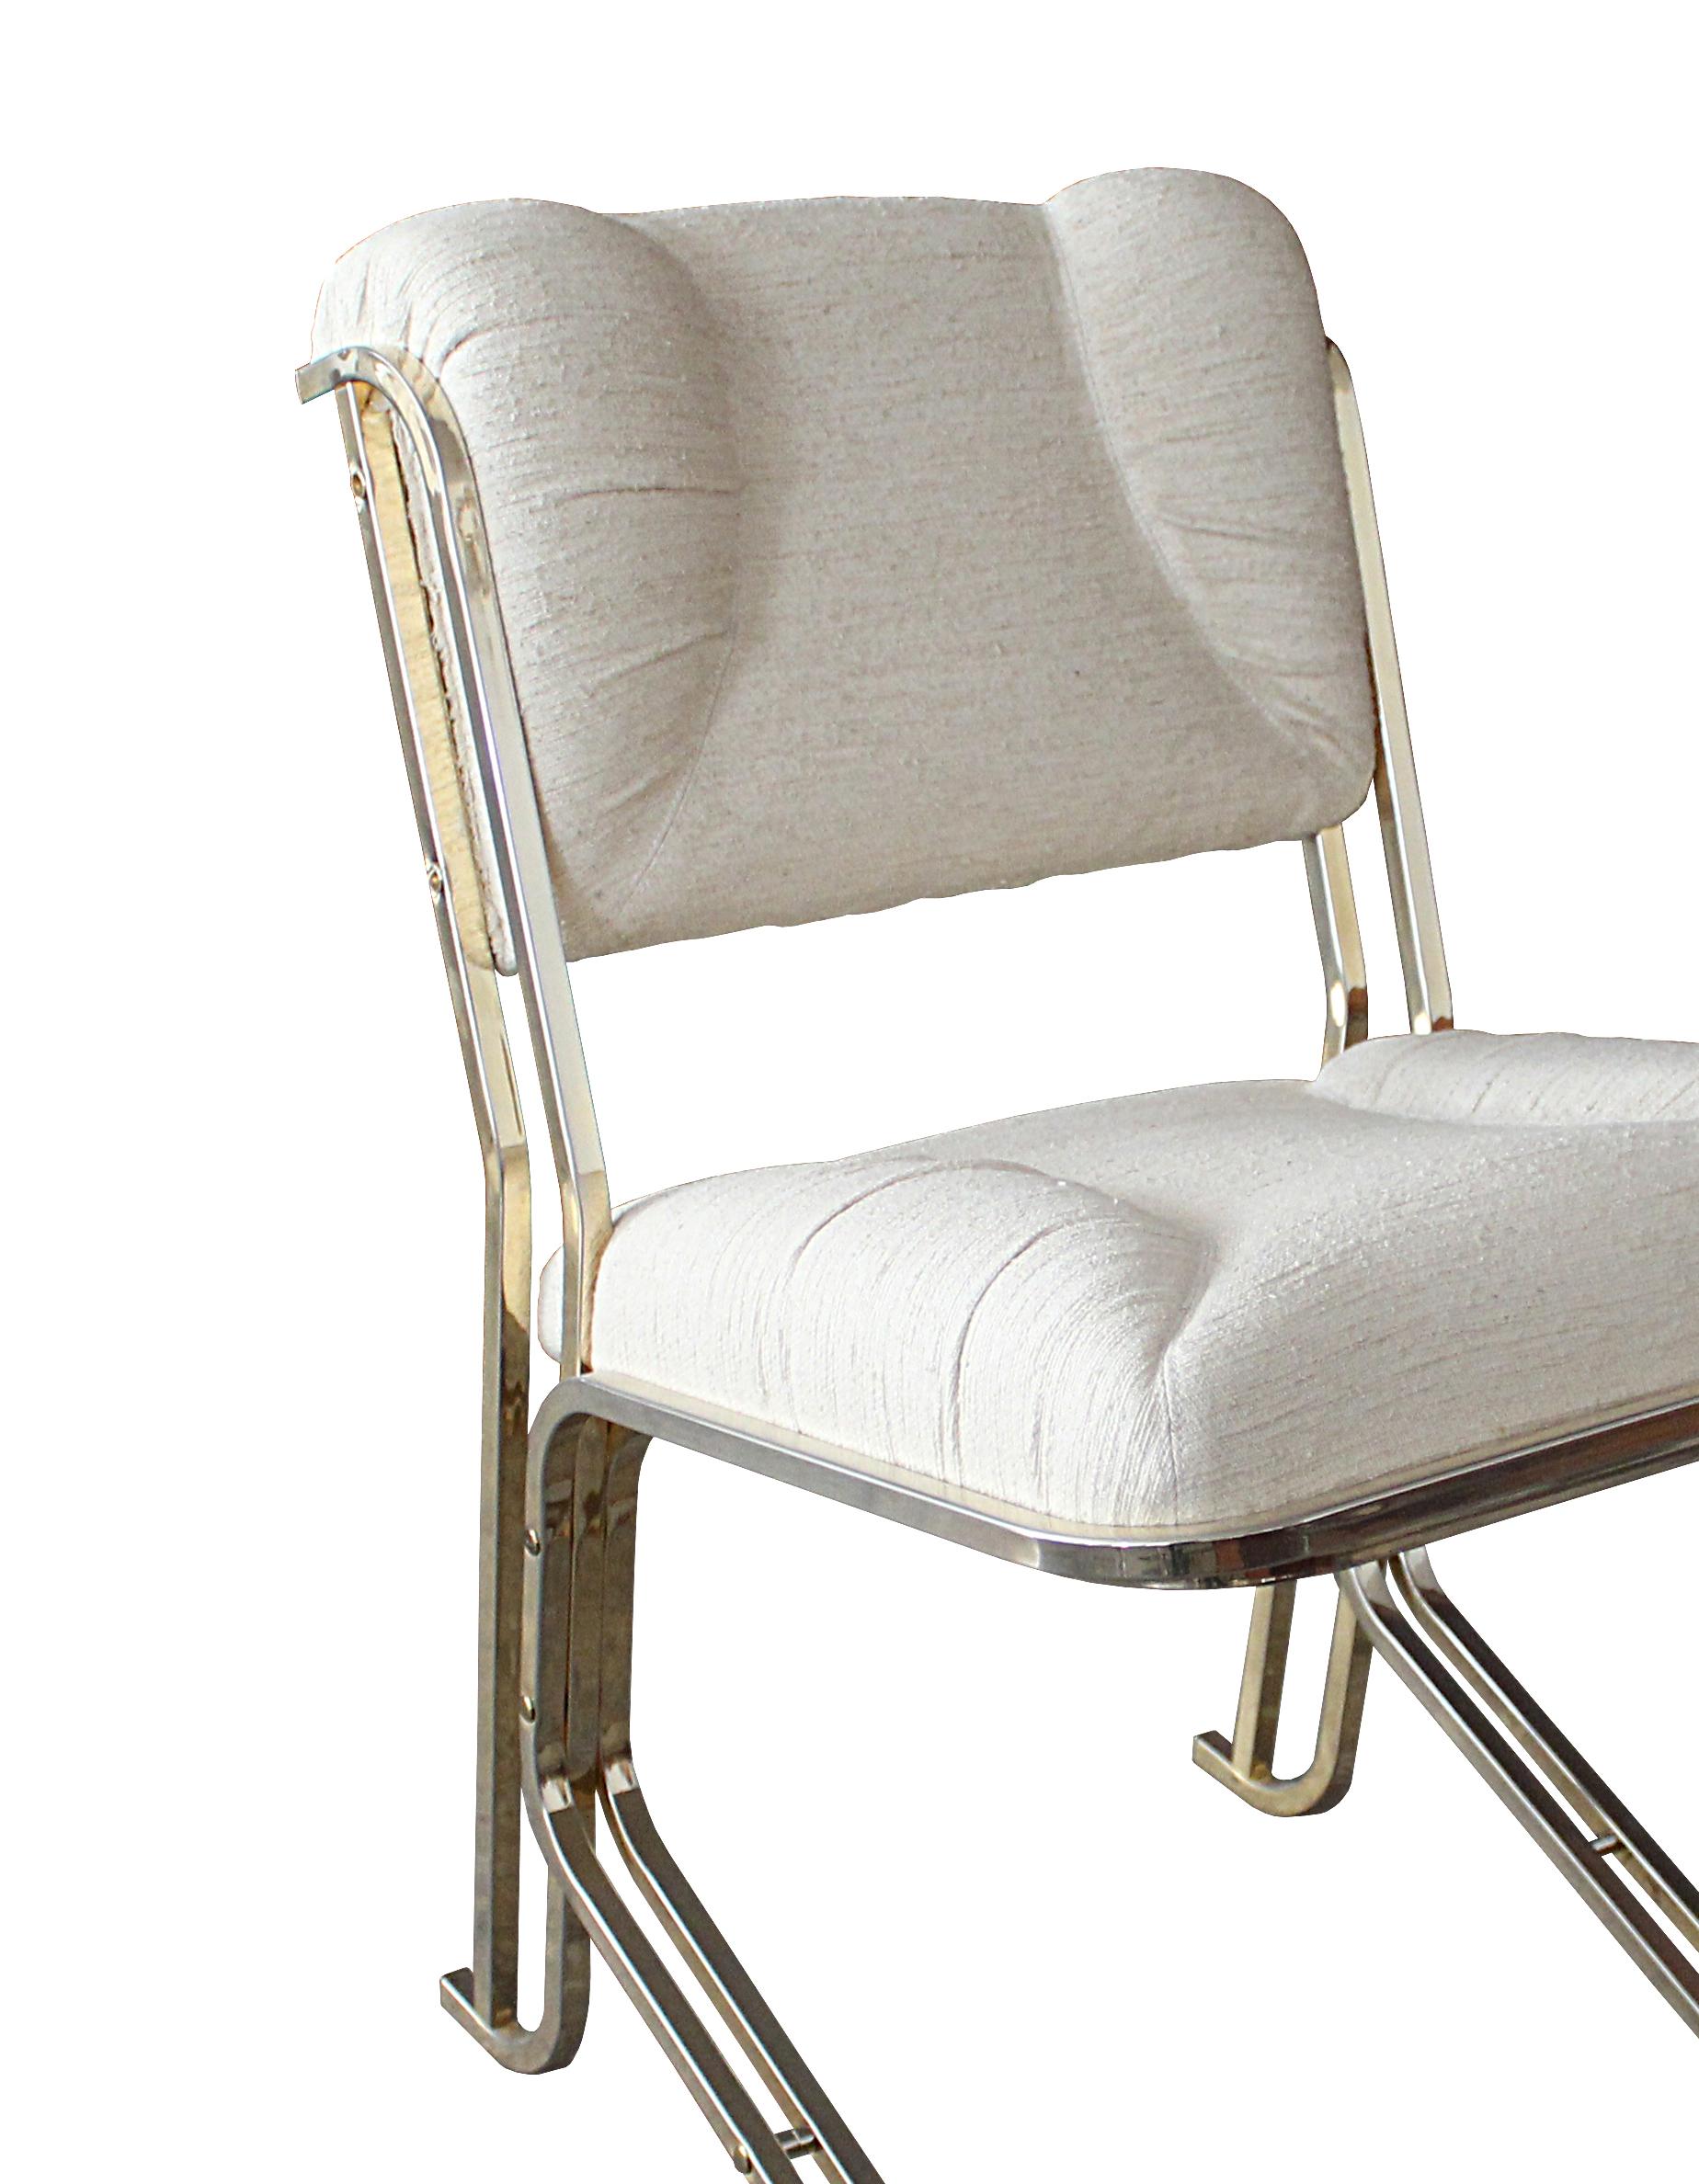 La grâce et l'élégance des cygnes sont célébrées dans cette chaise de salon exclusive qui exsudera la sophistication dans n'importe quel style d'intérieur. Le cadre robuste présente des éléments cylindriques parallèles en laiton satiné.